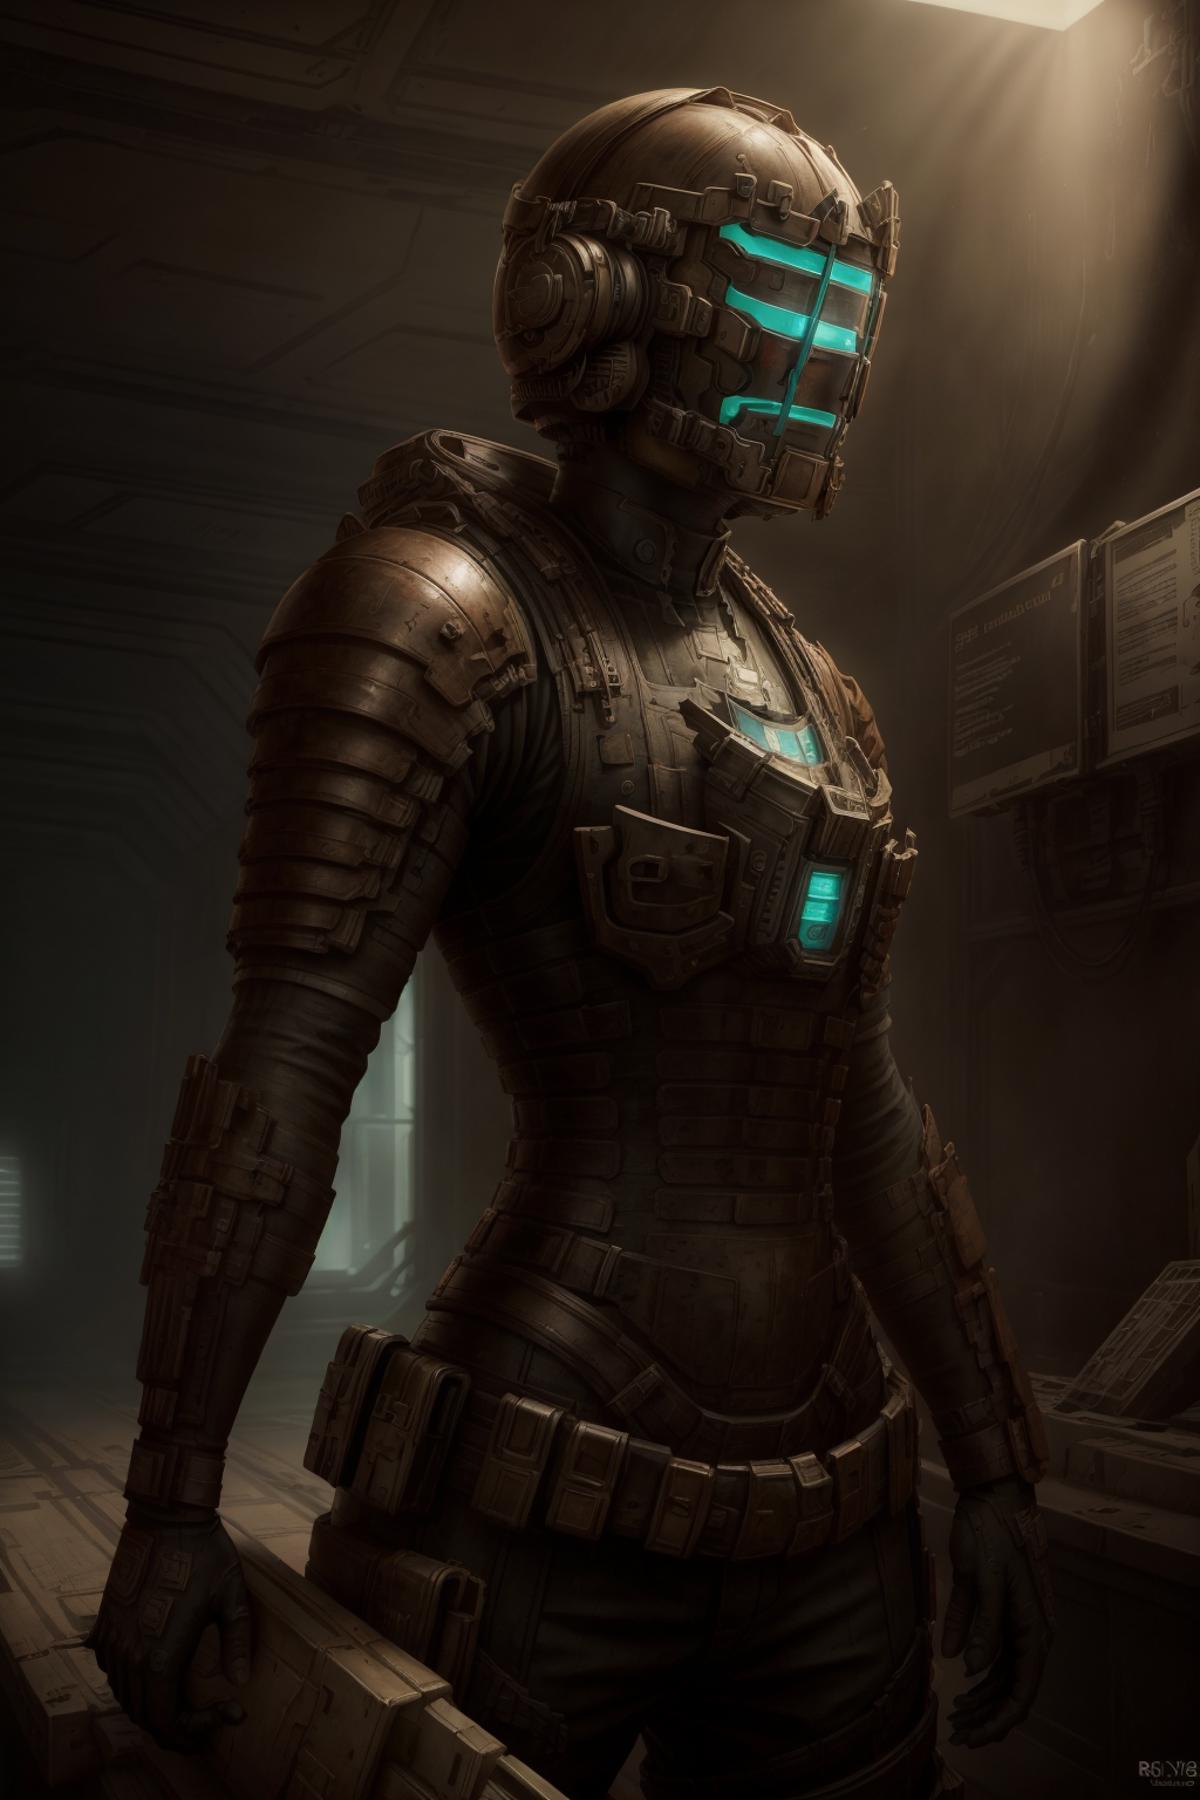 Engineering Suit (Dead Space) LoRA image by ADMNtek